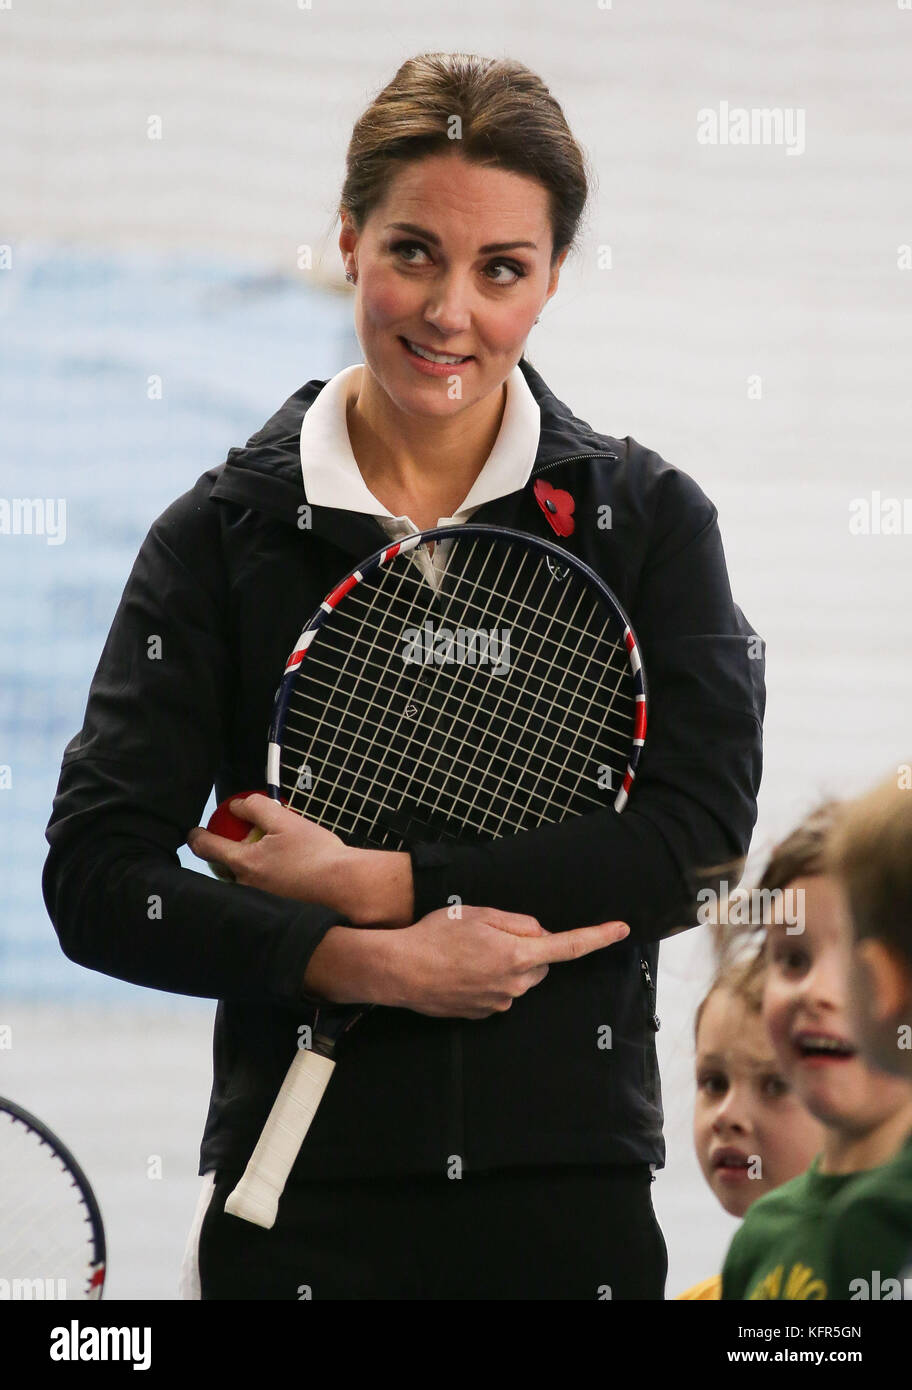 La duchesse de Cambridge participe à une session tennis for Kids lors d'une visite à la Lawn tennis Association (LTA) au National tennis Centre, dans le sud-ouest de Londres. Banque D'Images